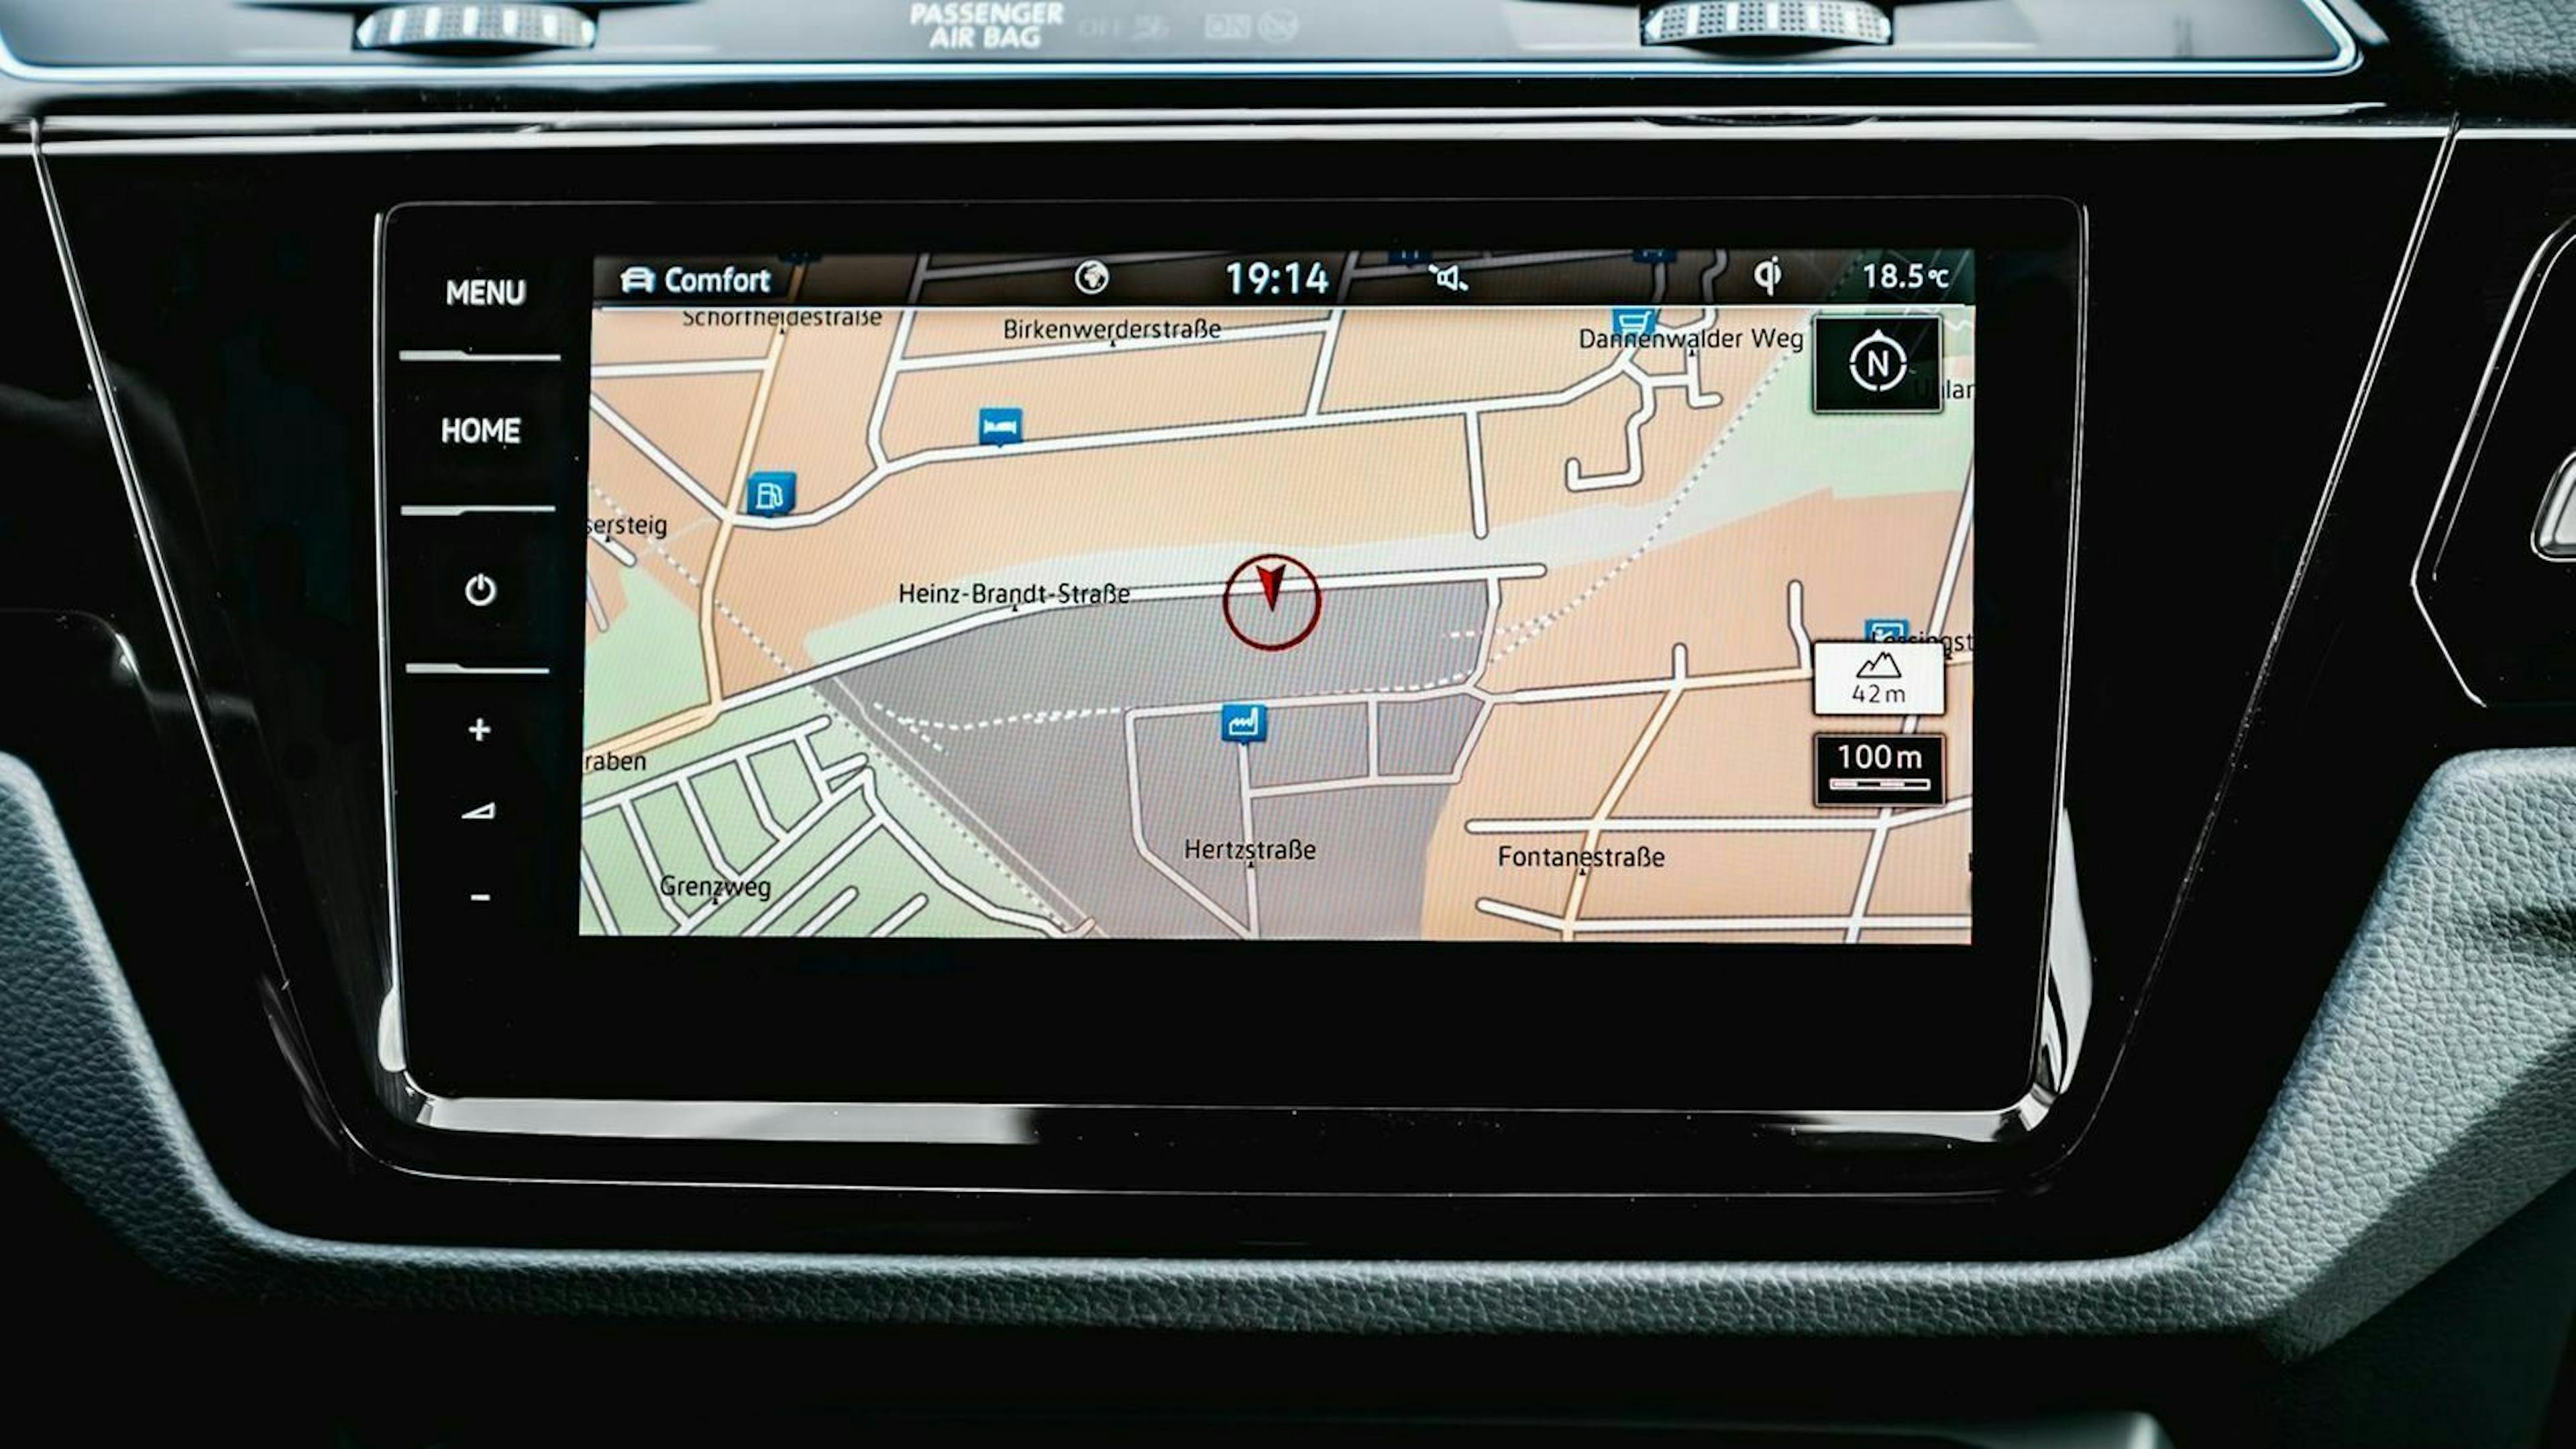 Zu sehen ist der Infotainment-Bildschirm des VW Touran